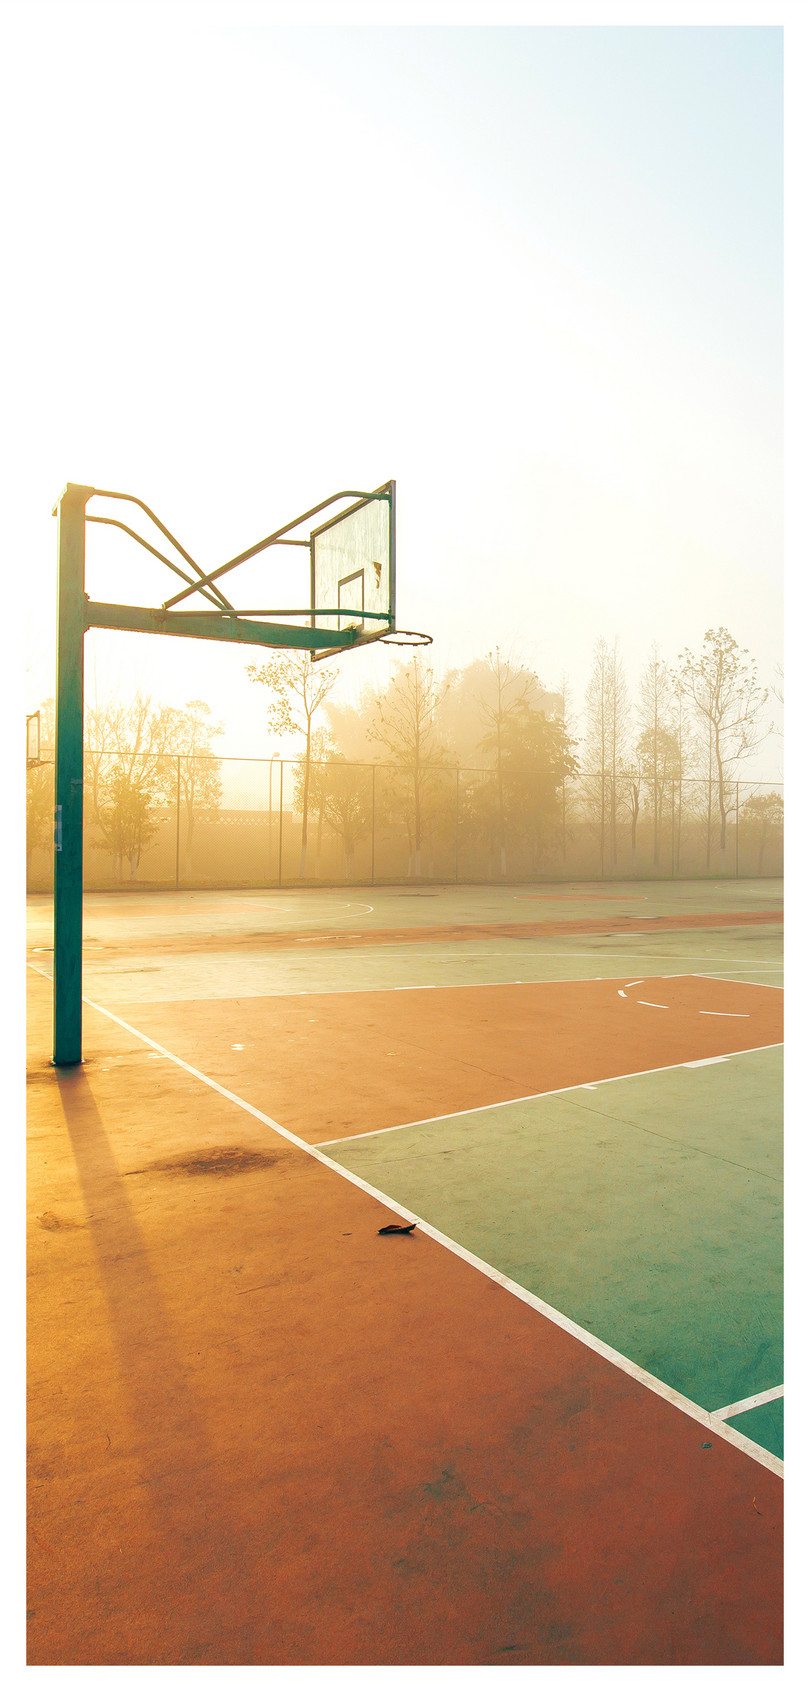 Cellphone Wallpaper In Basketball Court - Basketball Court , HD Wallpaper & Backgrounds